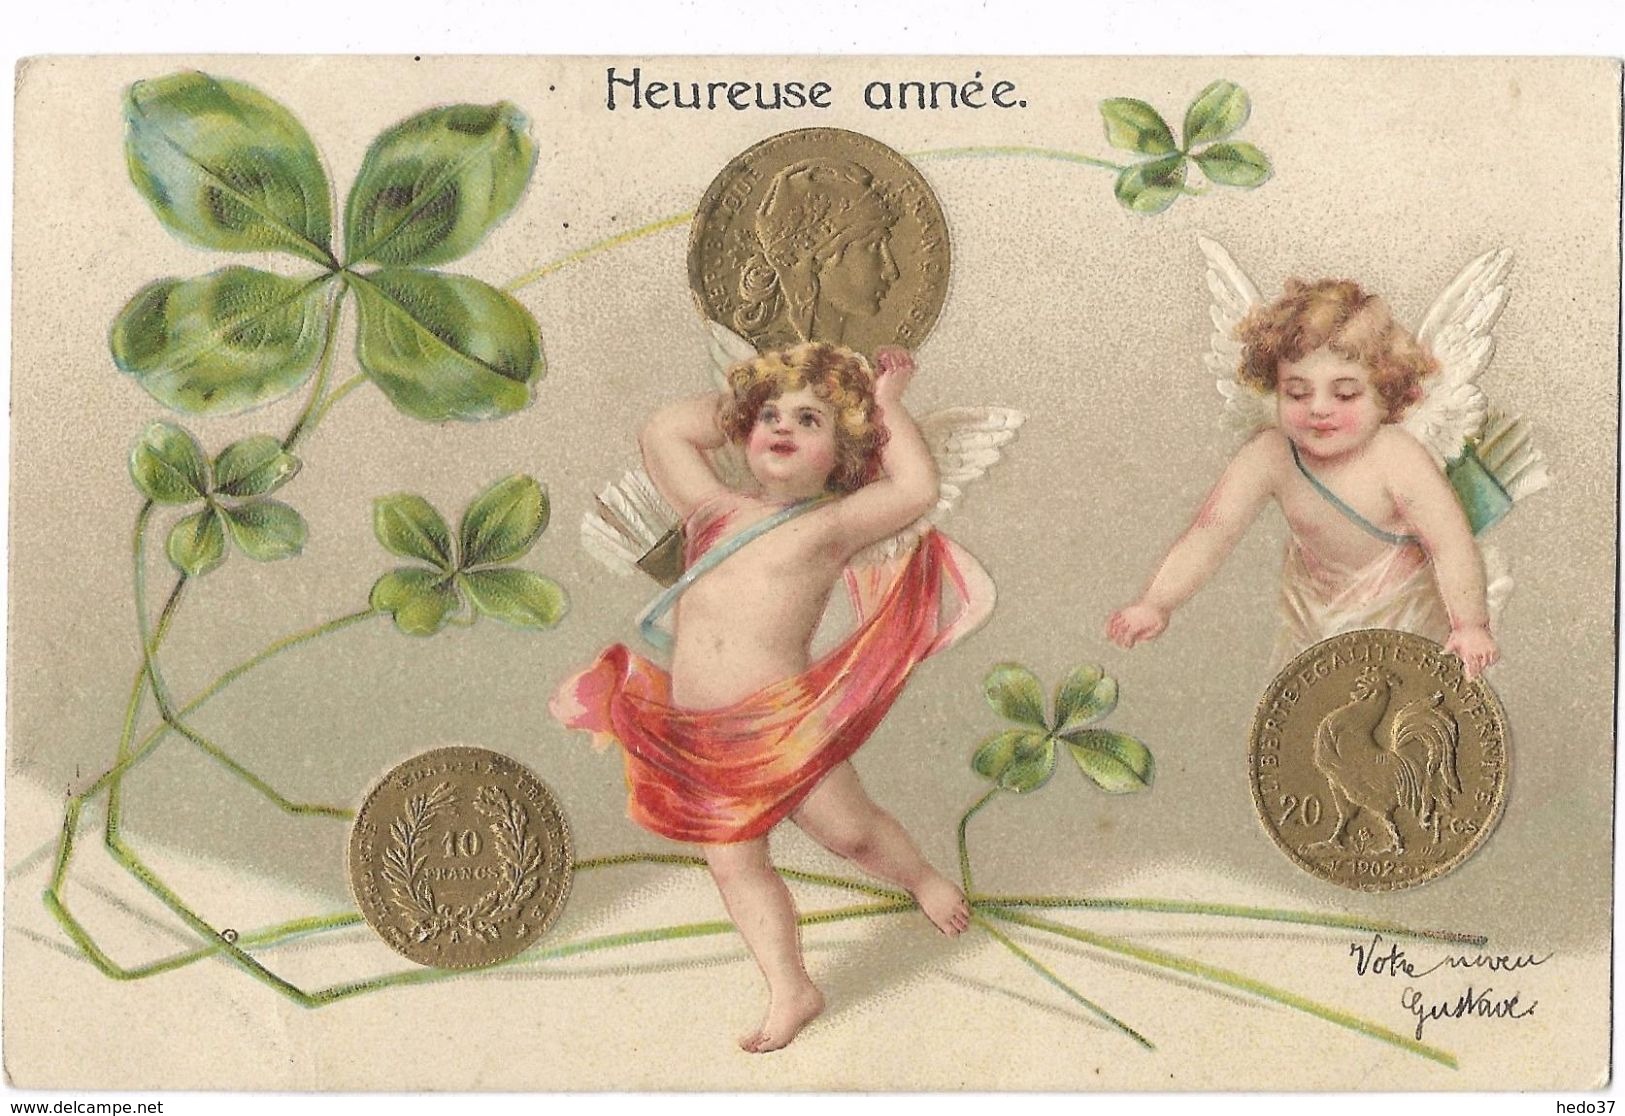 10 Francs Et 20 Francs Or - Heureuse Année - Münzen (Abb.)